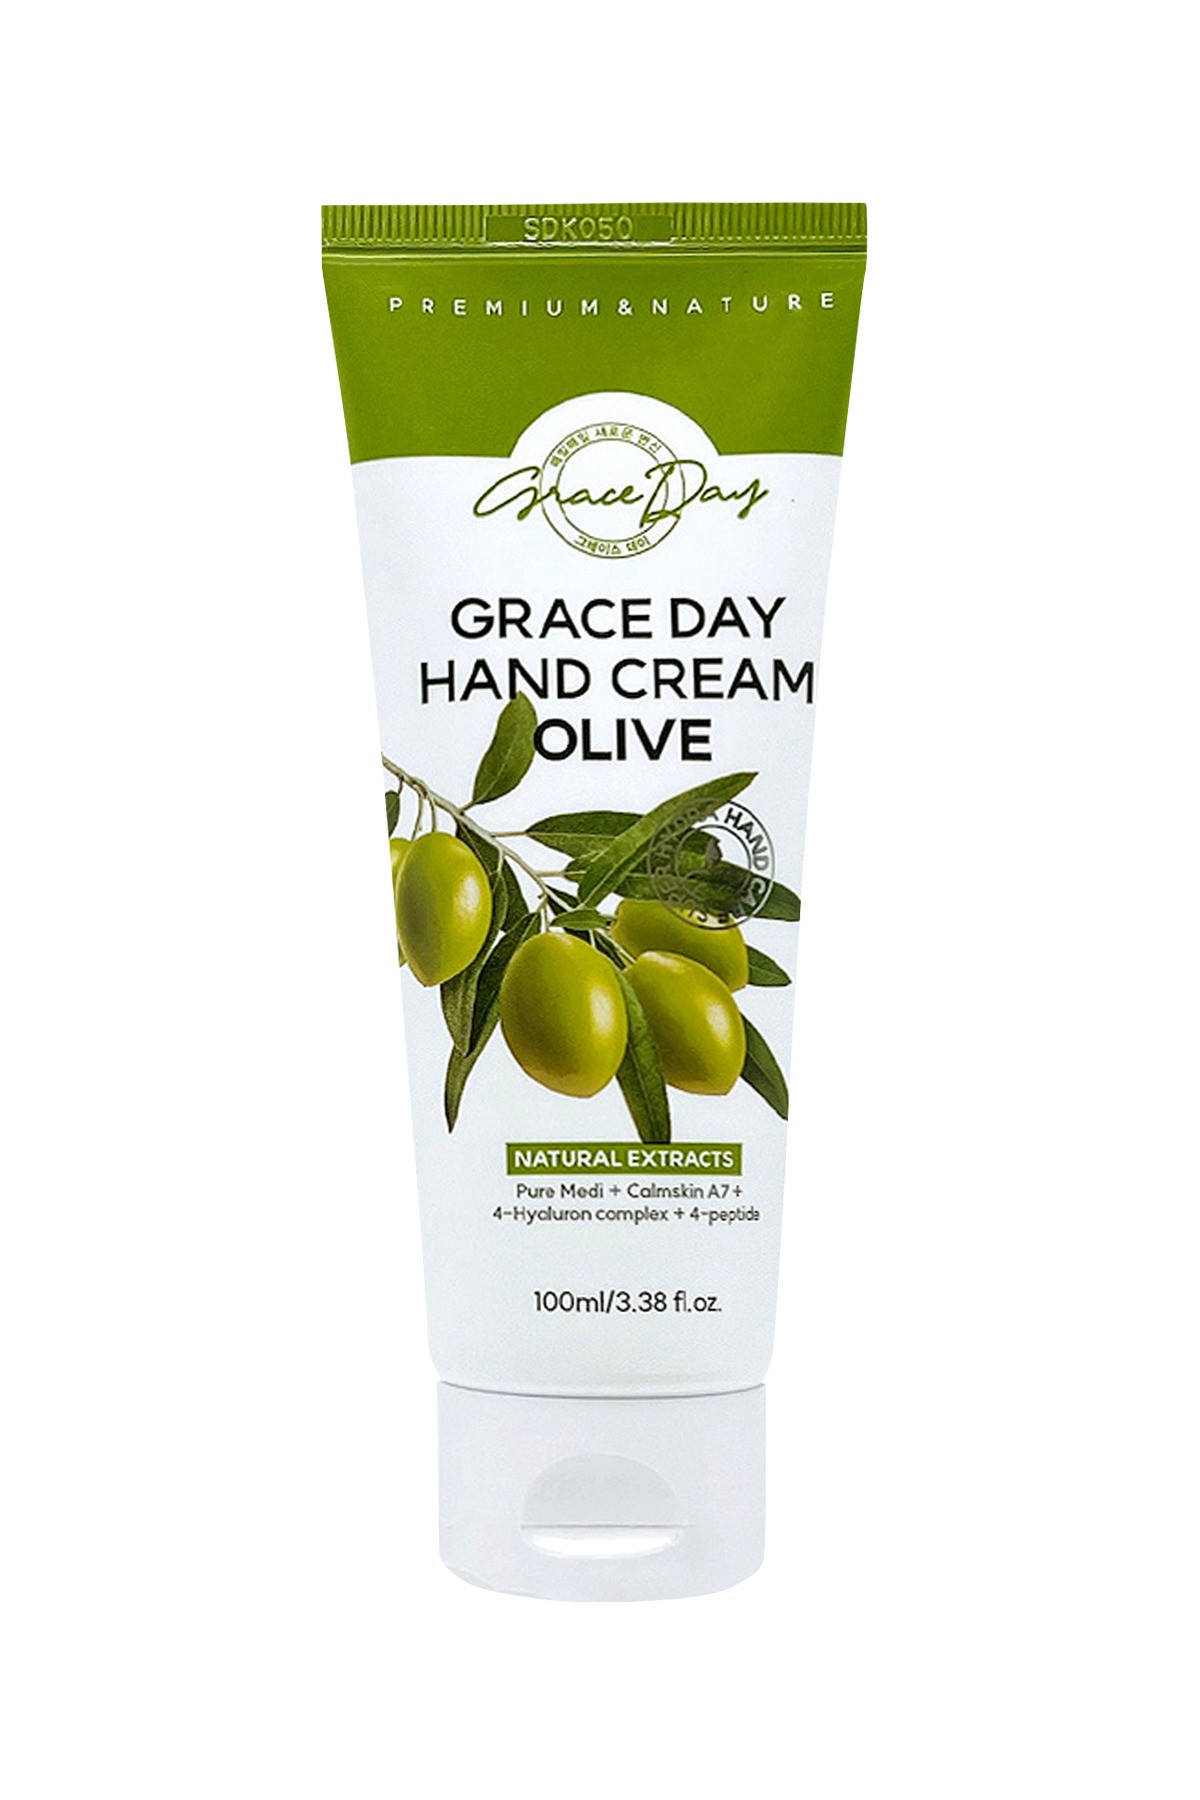 Zeytinyağı İçeren Nemlendirici Vegan El Kremi Grace Day Hand Cream Olive 100ml